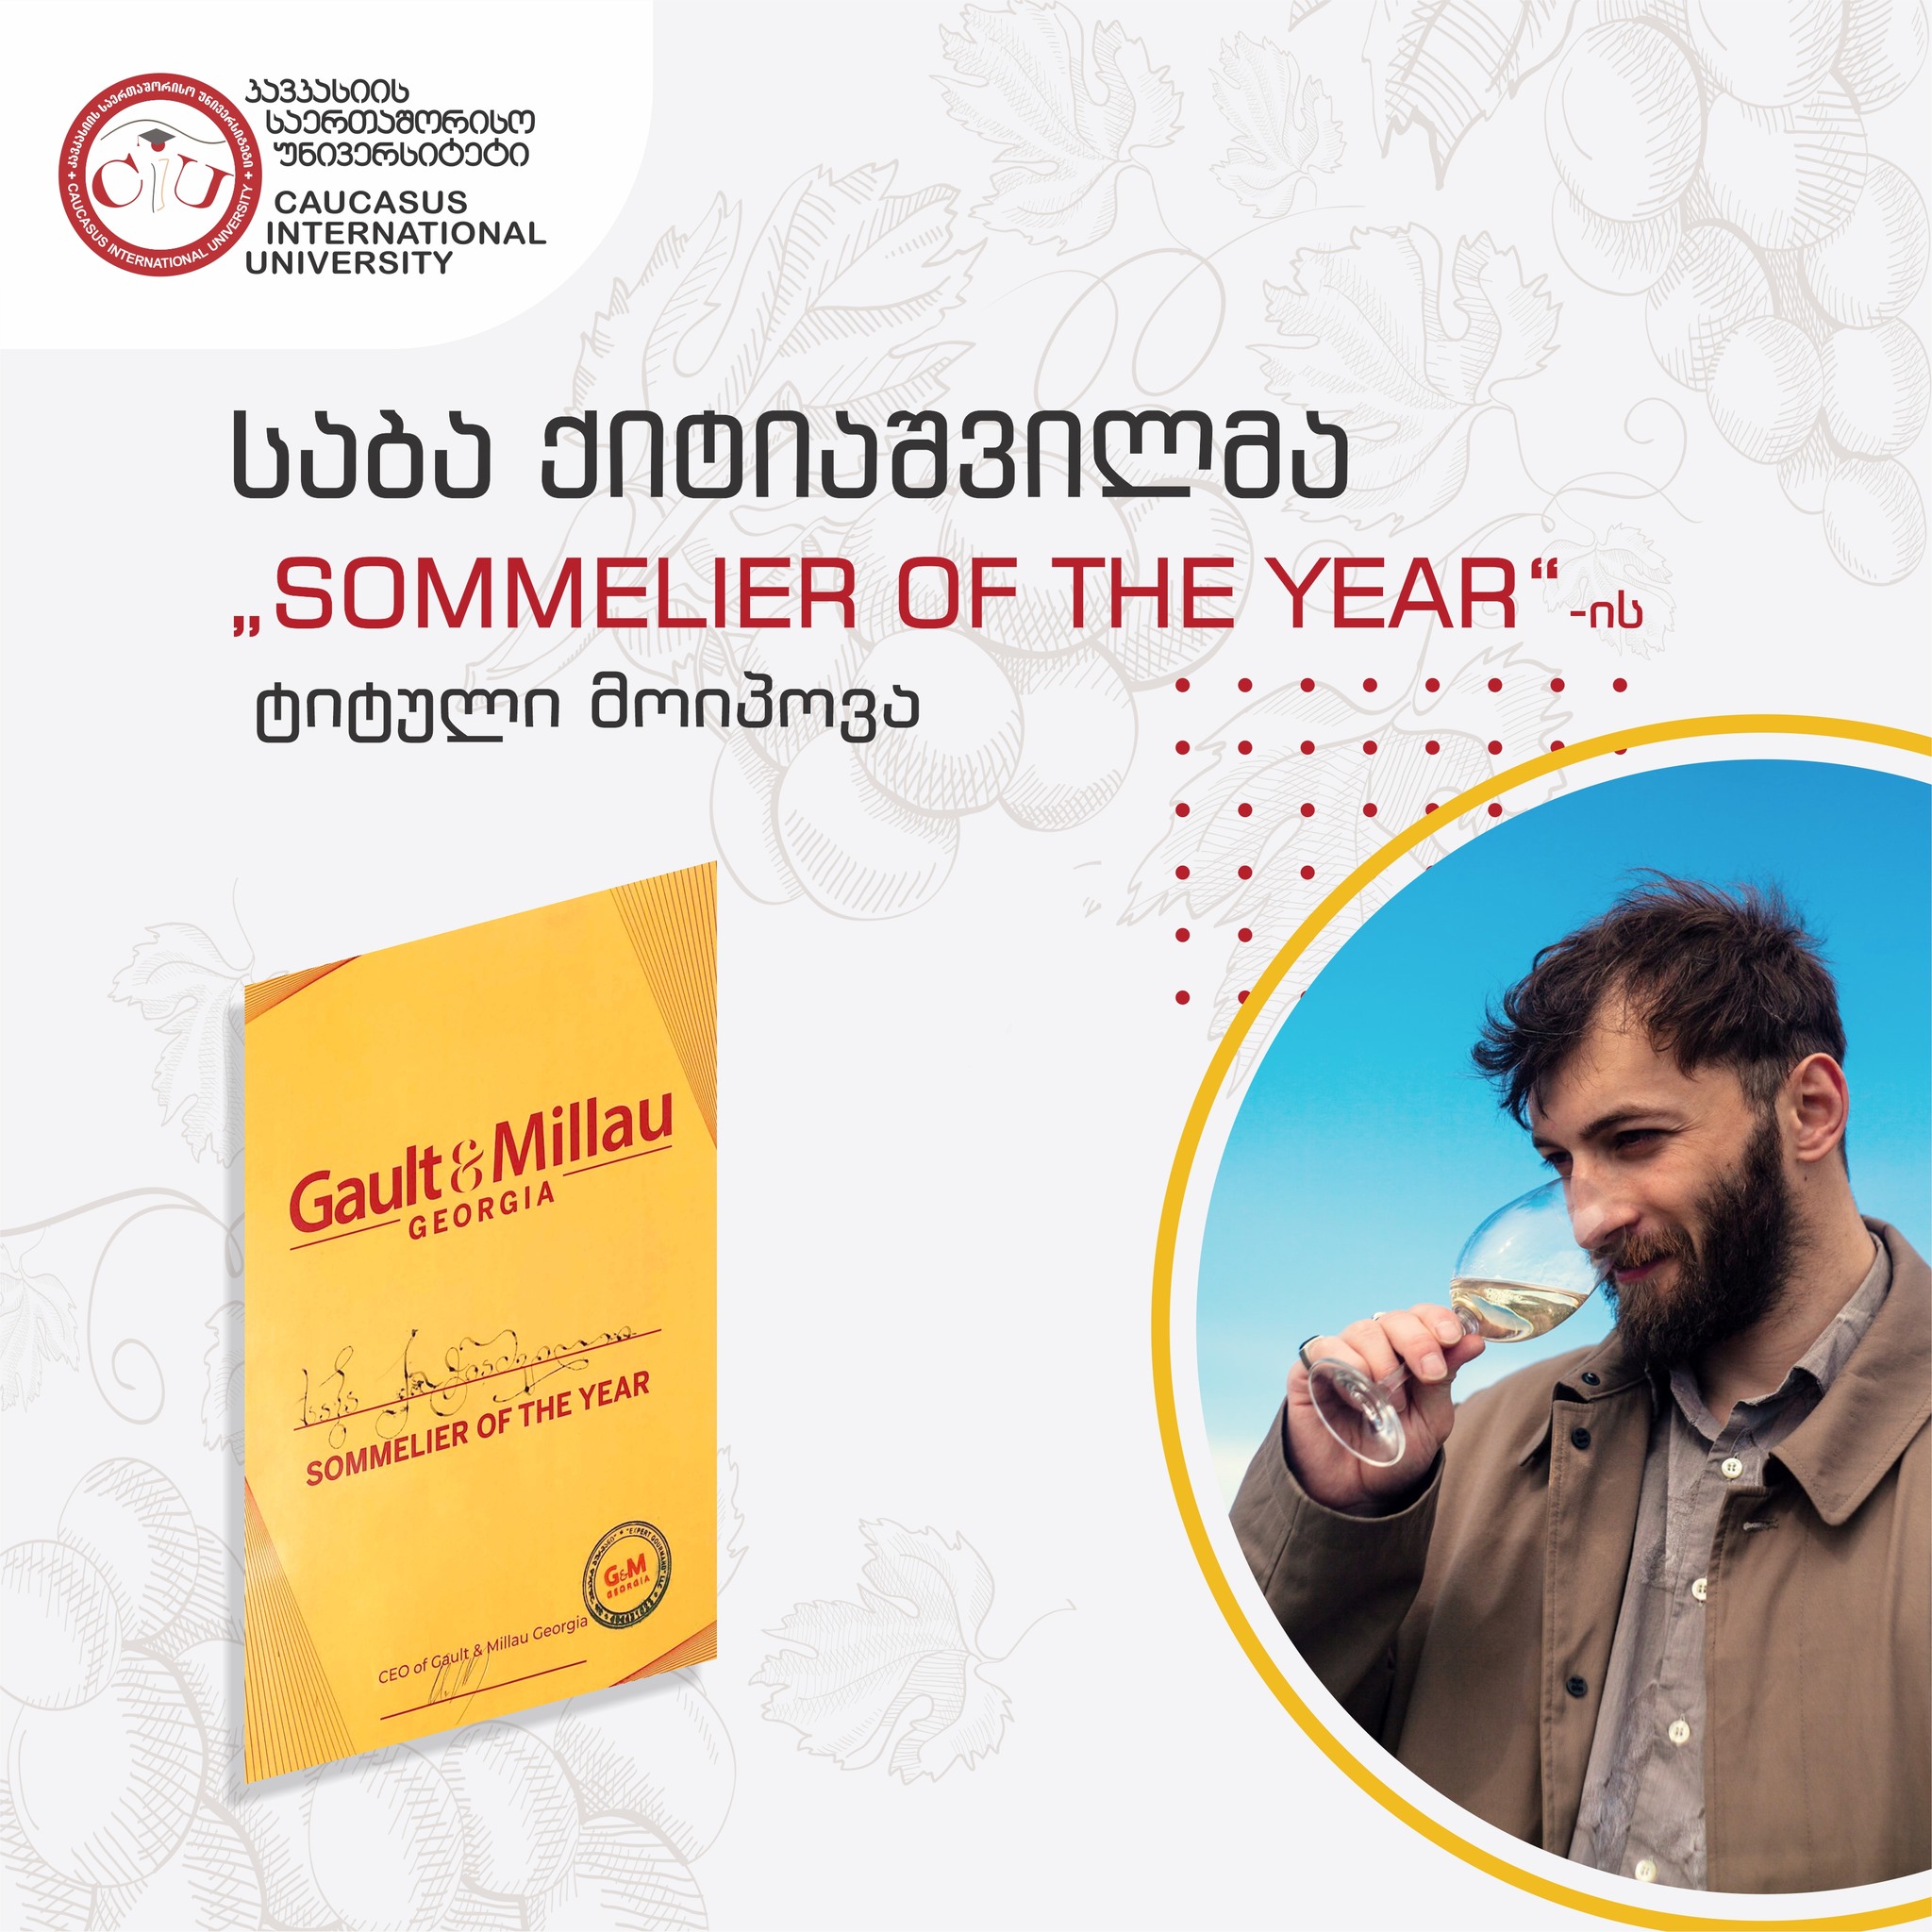 Saba Kitiashvili Won the Title of Sommelier of the Year